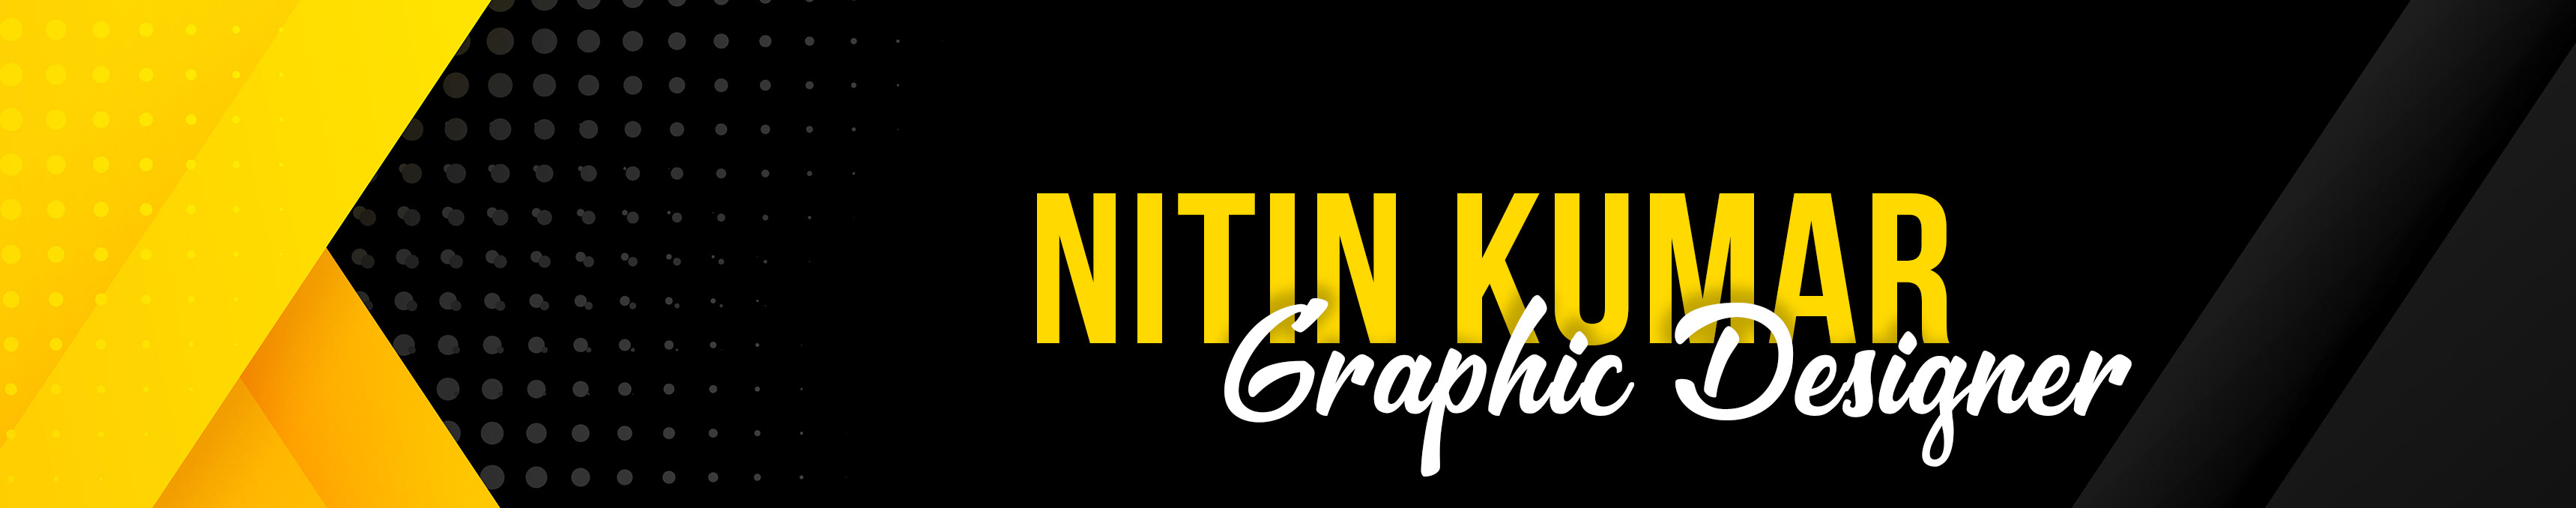 Nitin Kumar's profile banner